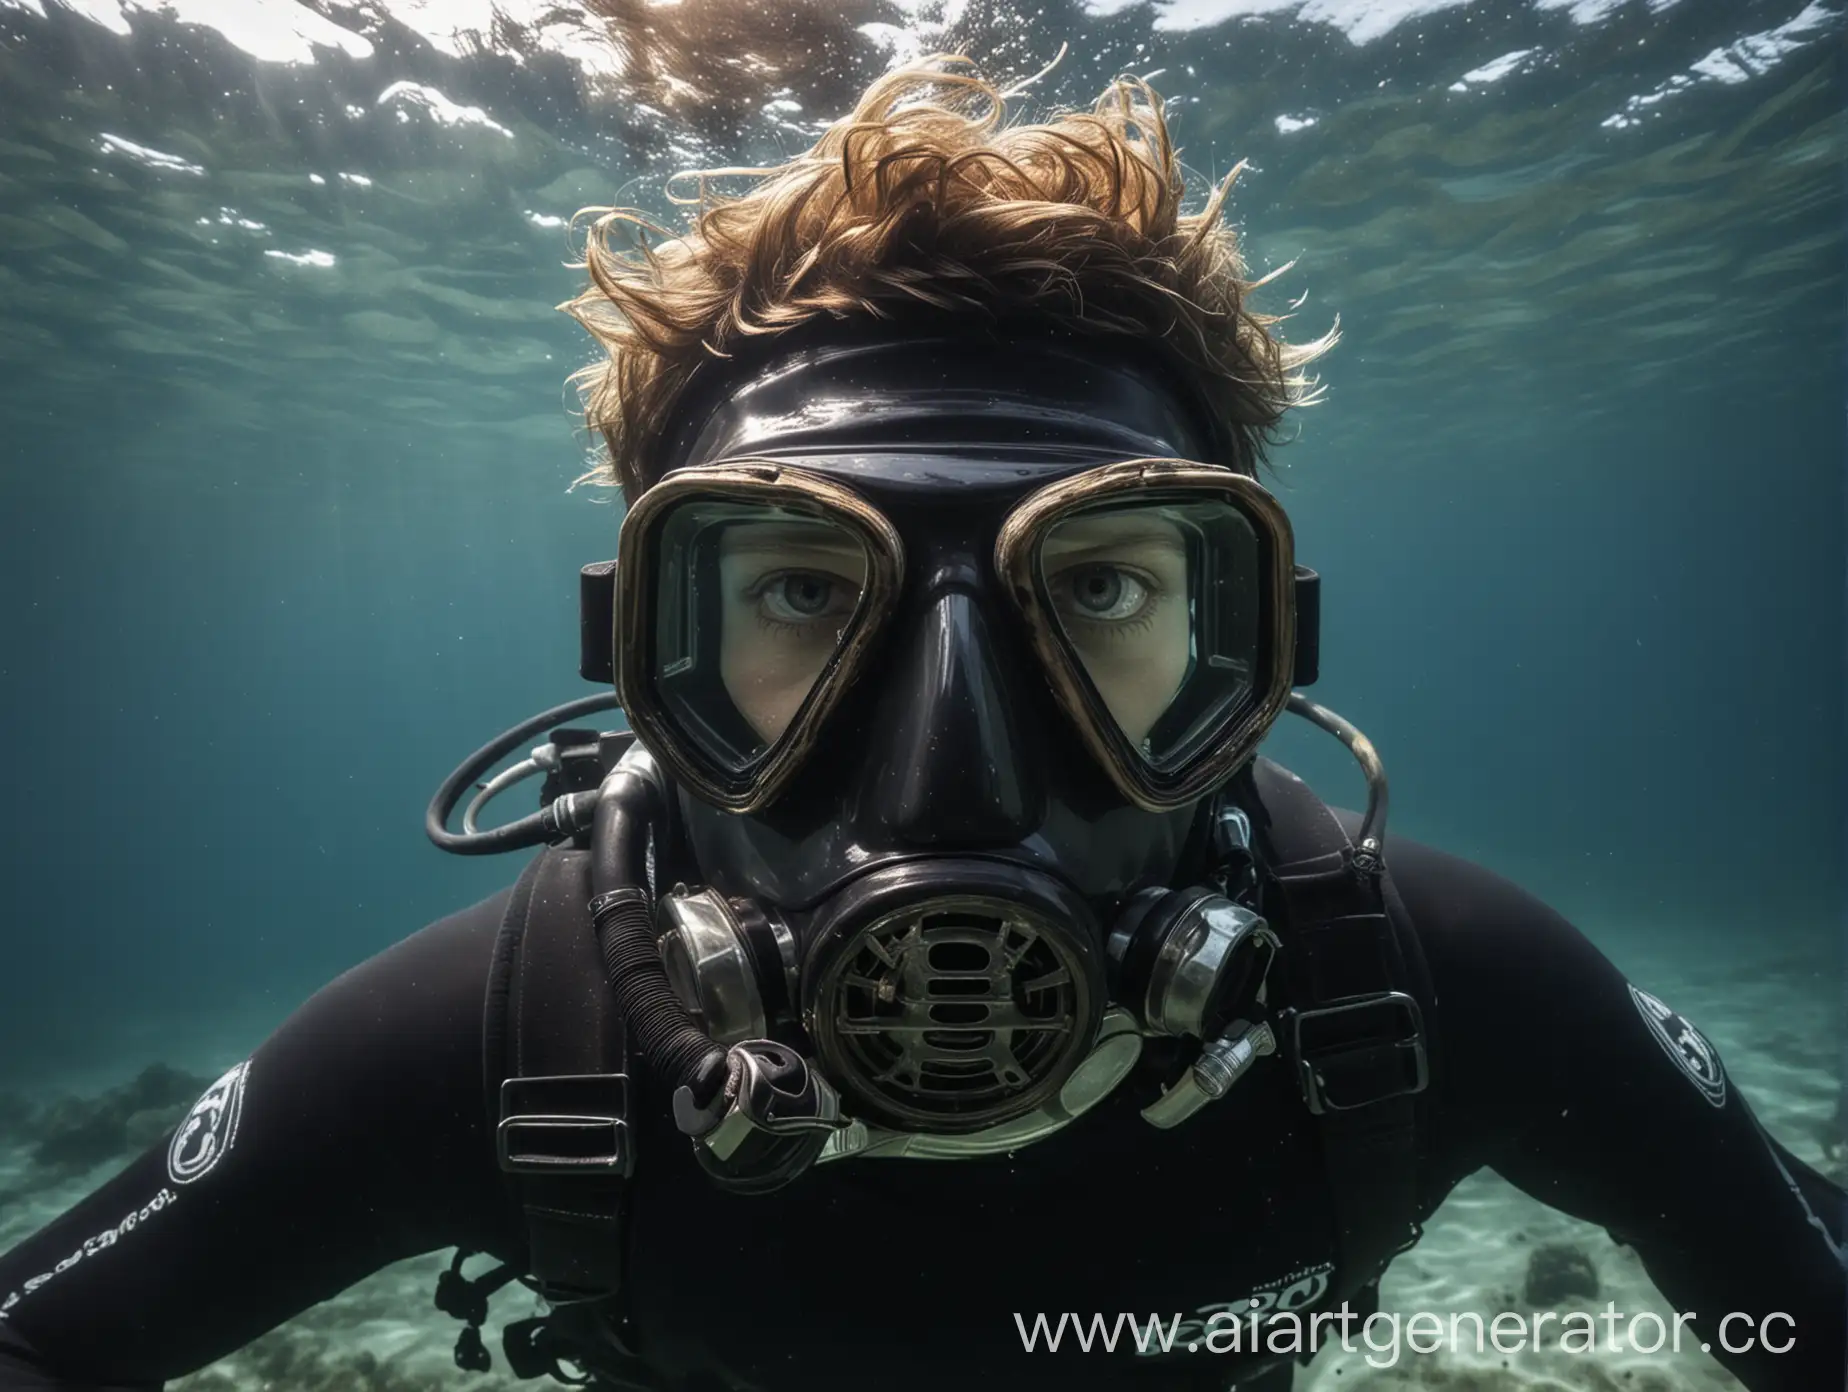 Портрет дайвера в маске, в море под водой, внешность похожа на человека на фото, вид более серьезной и дайвер должен стоять так же как человек на фото